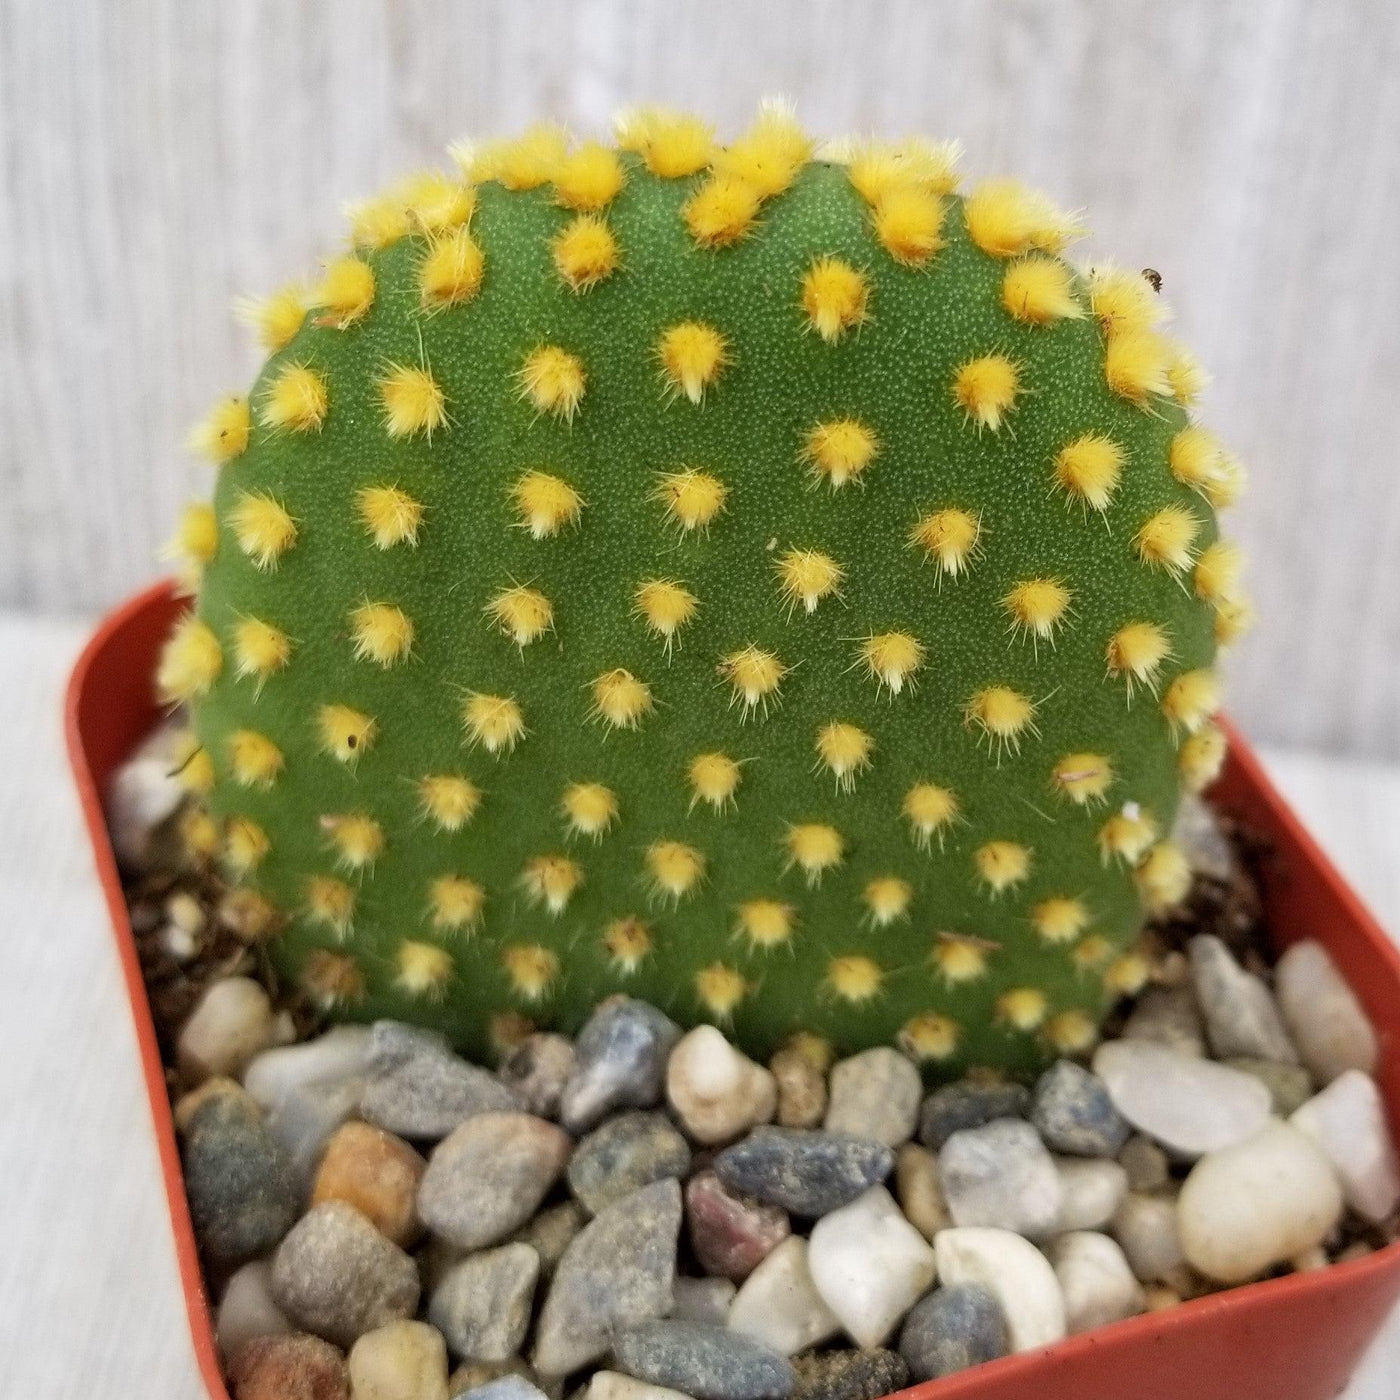 Bunny Ear Cactus 'Opuntia microdasys'